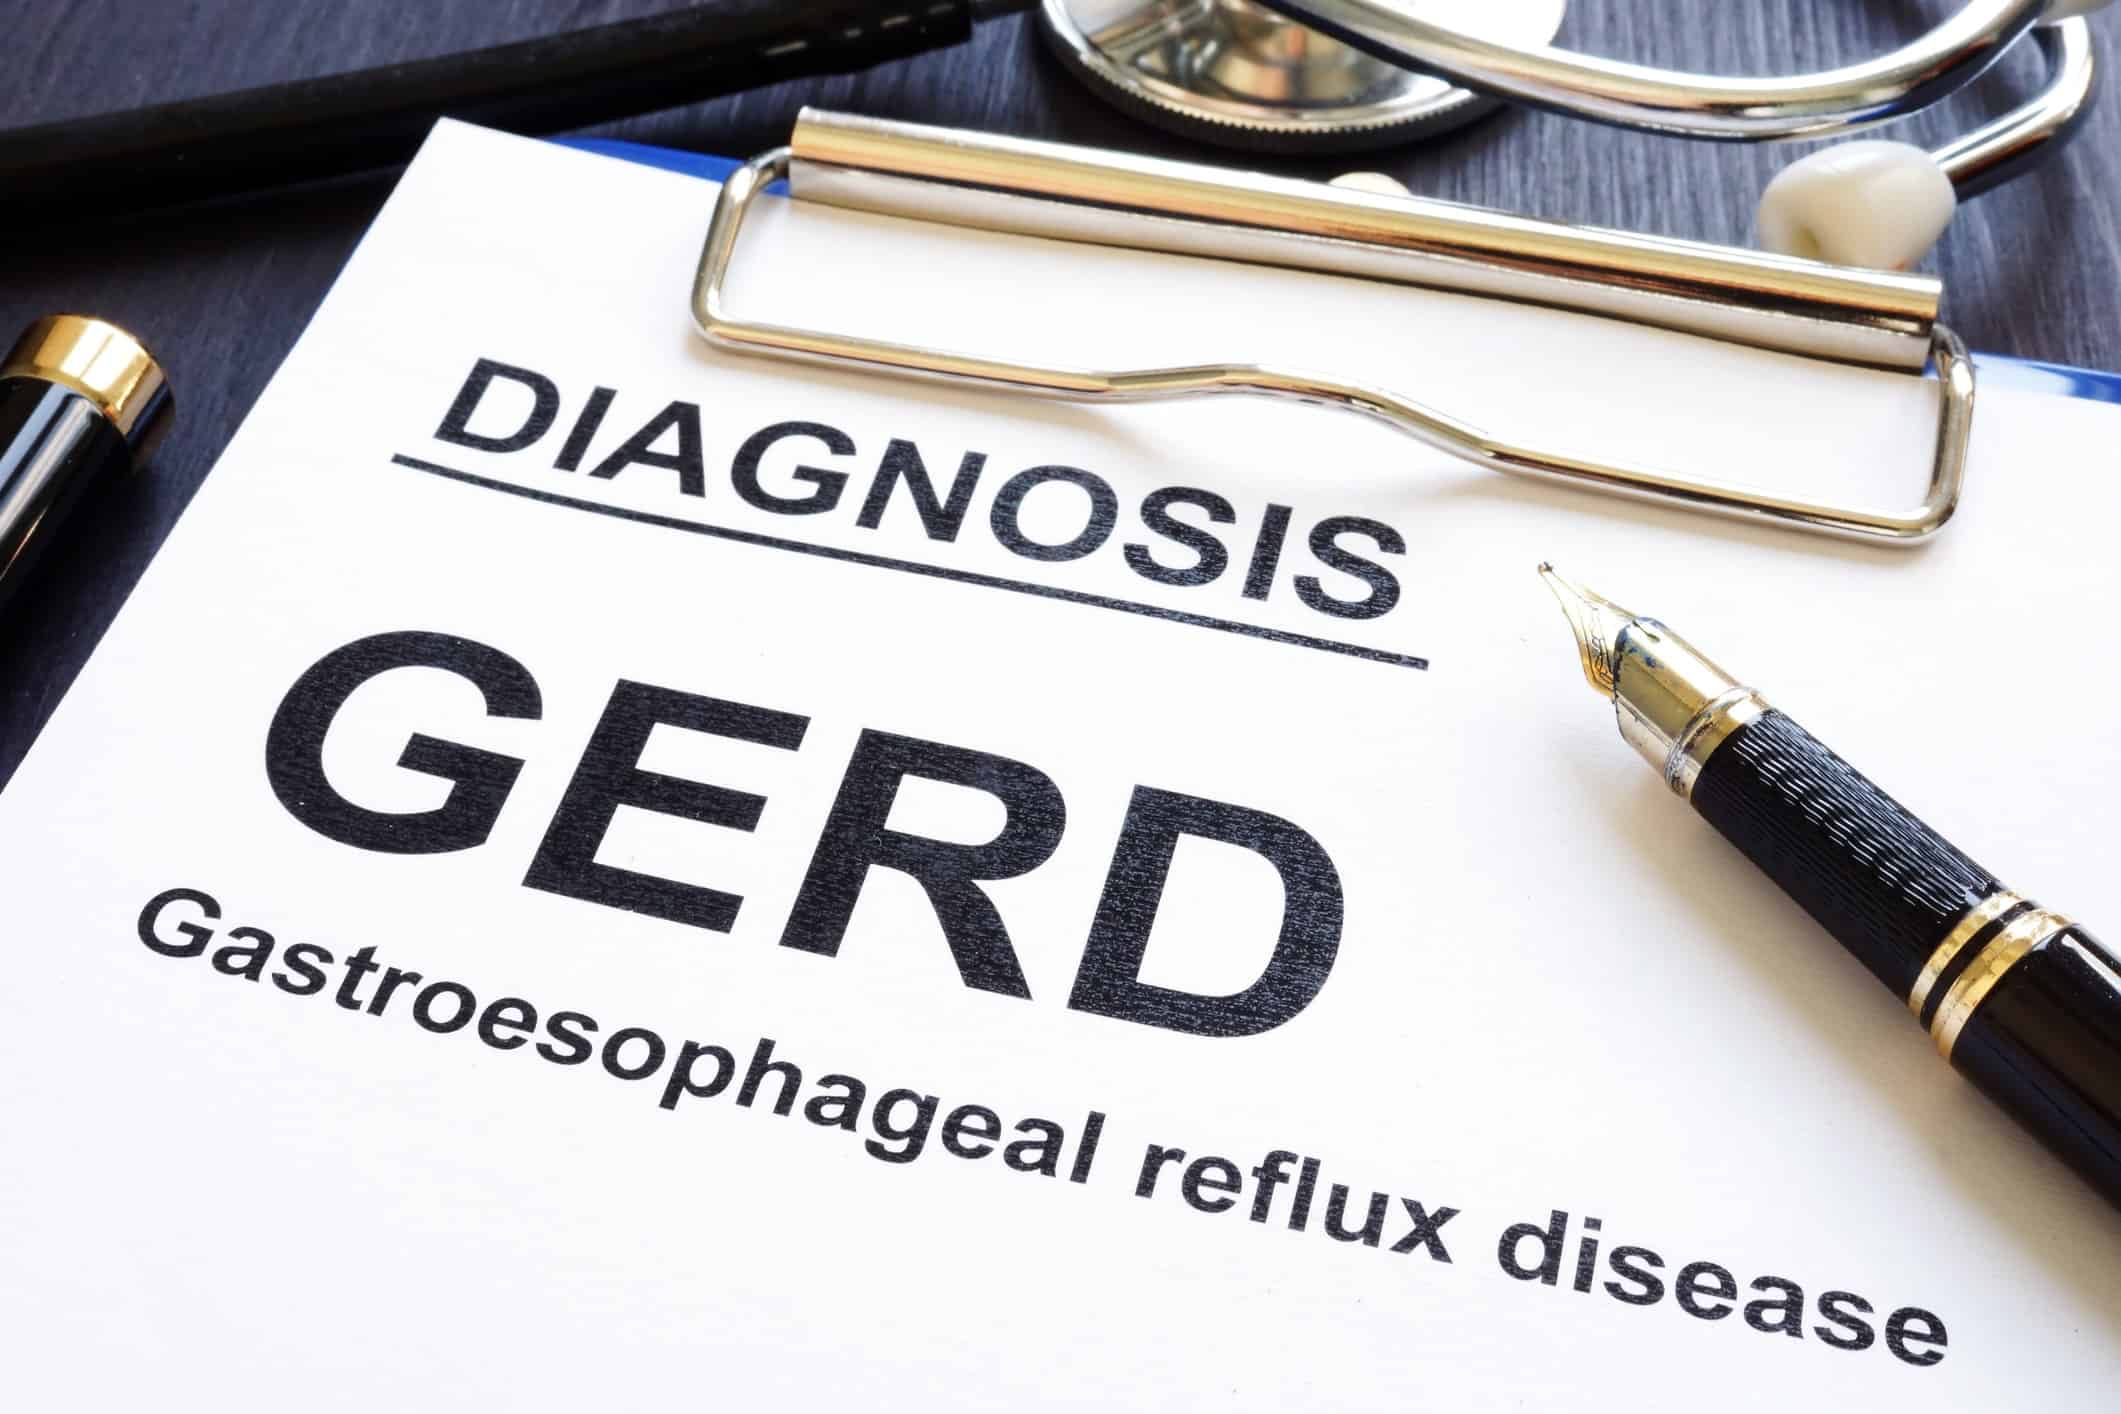 Gastroesophageal reflux disease GERD on a clinic desk.